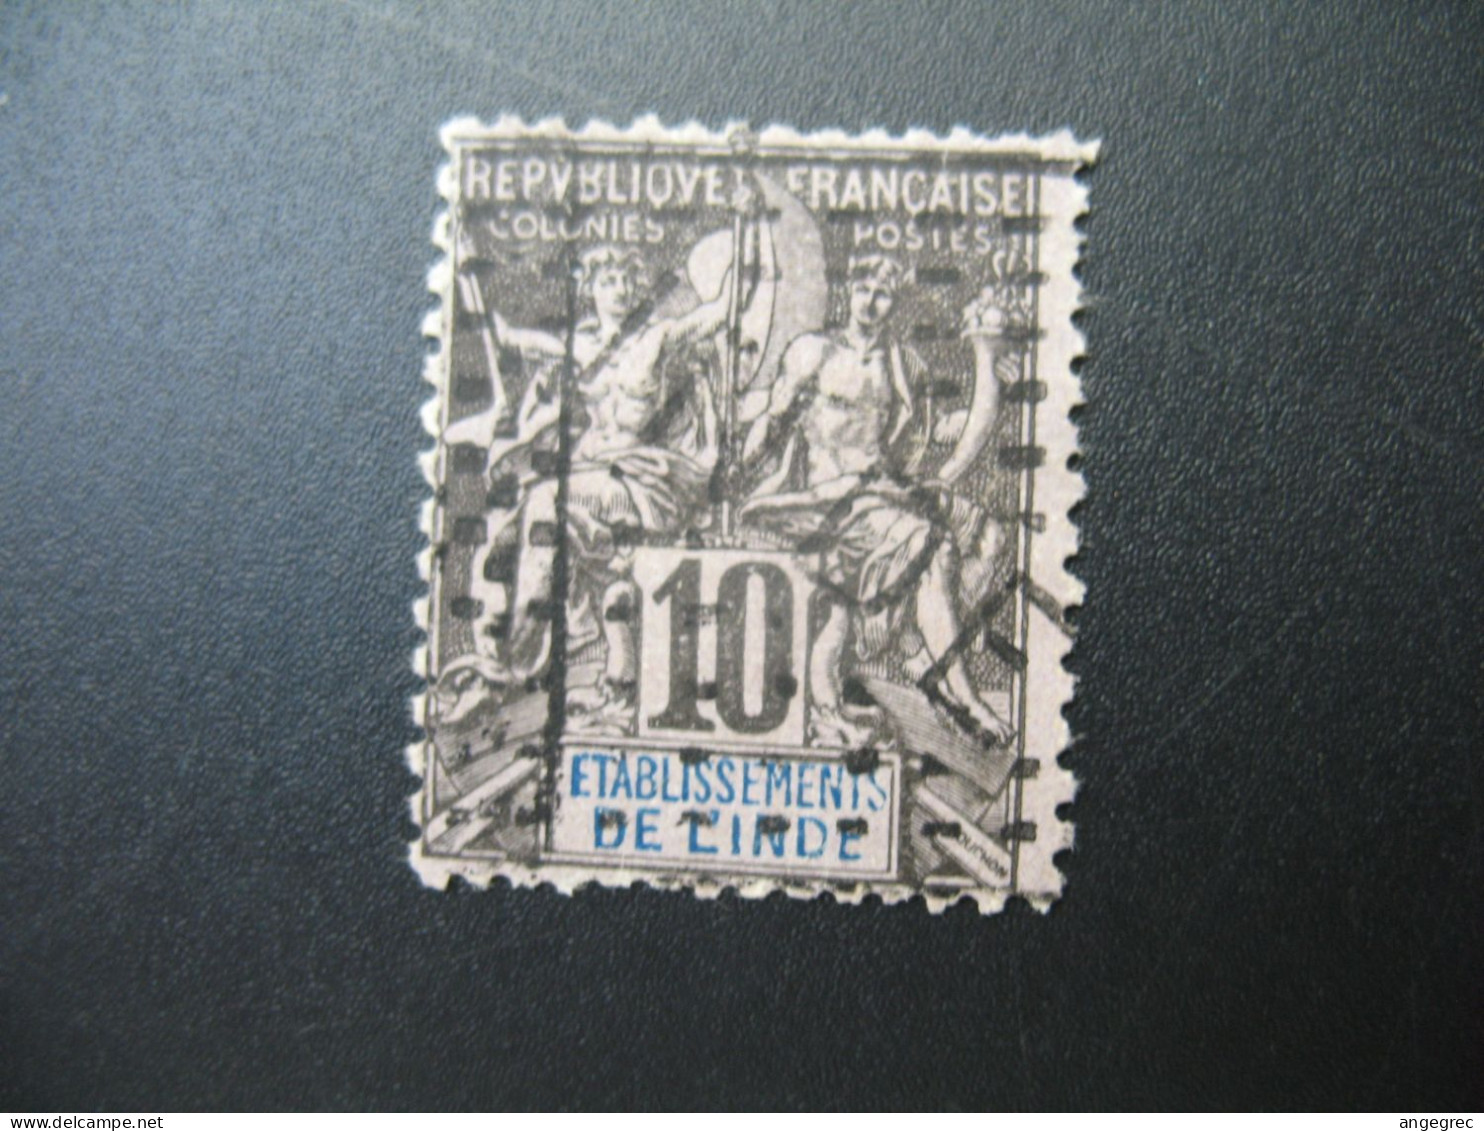 Inde Française Karikal Stamps French Colonies N° 5 Neuf * NSG Maury à Voir - Oblitérés